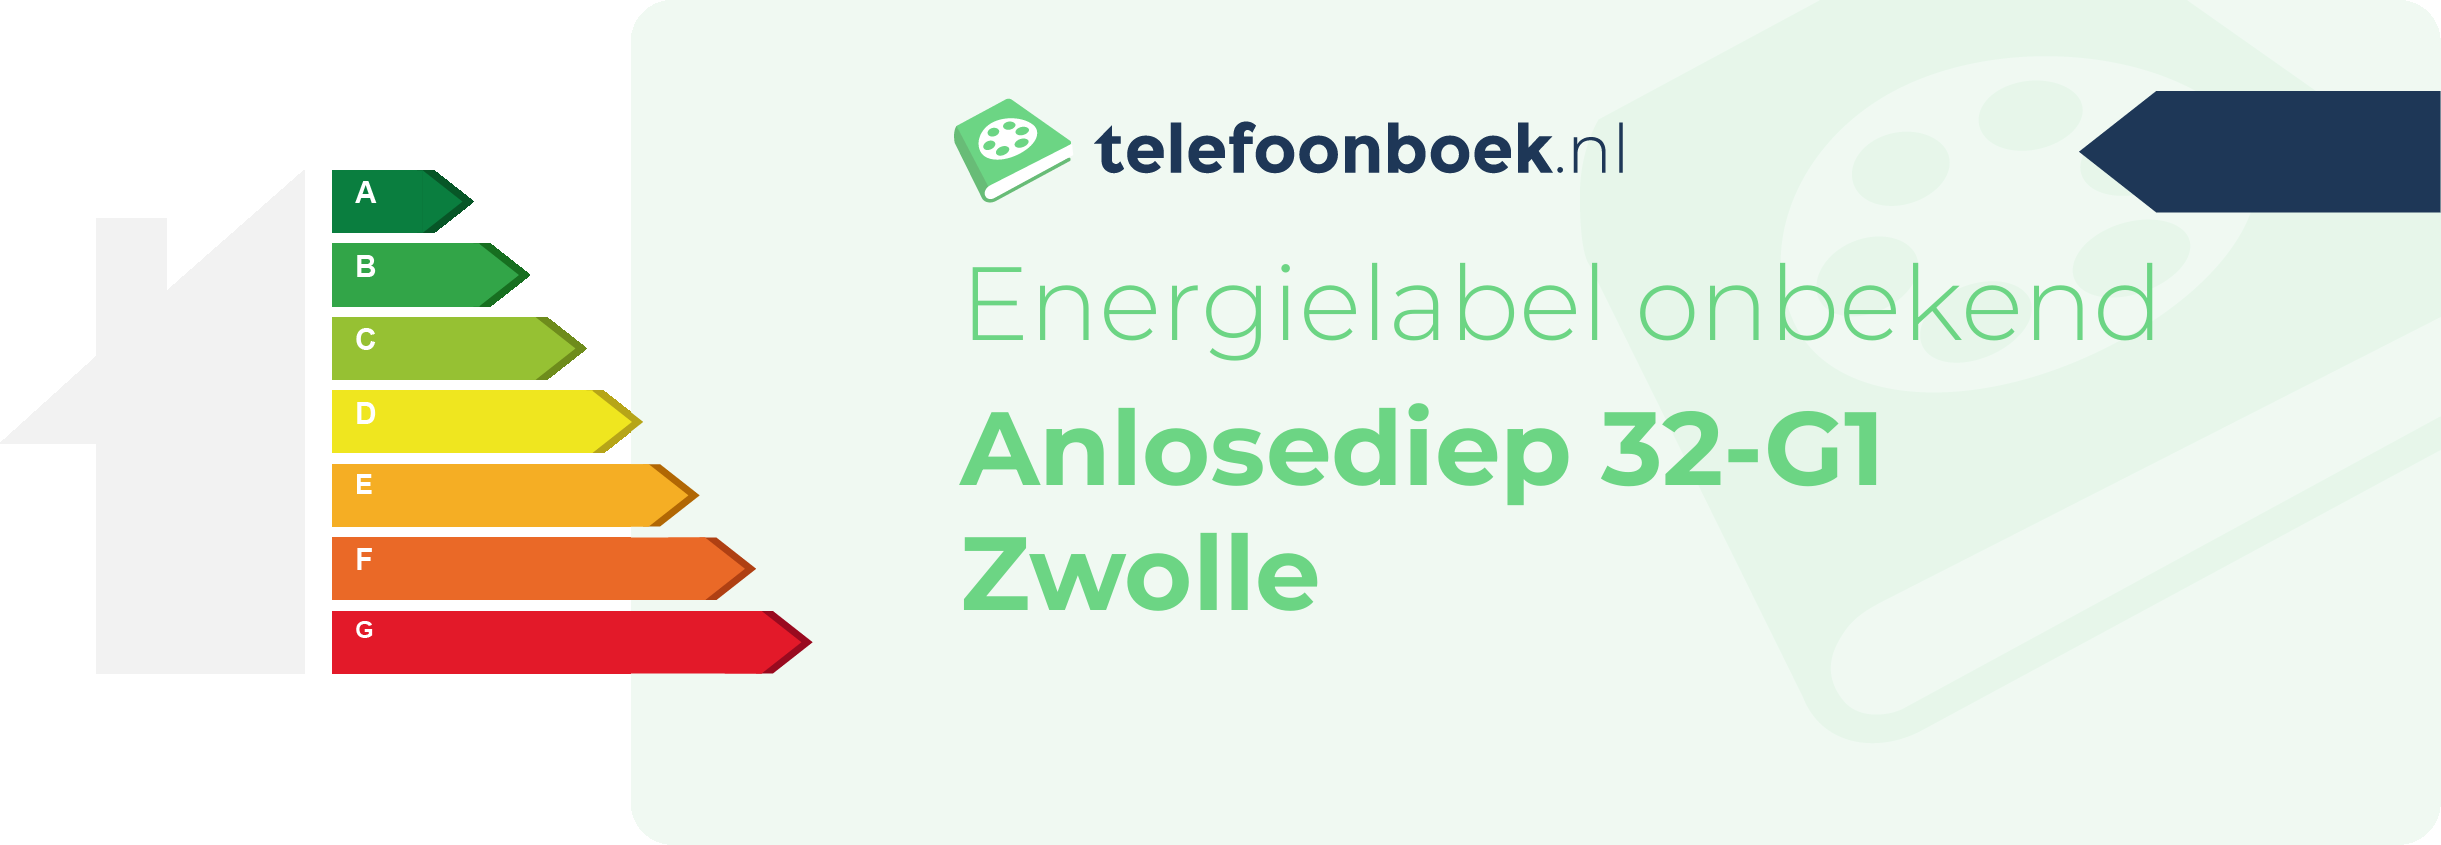 Energielabel Anlosediep 32-G1 Zwolle